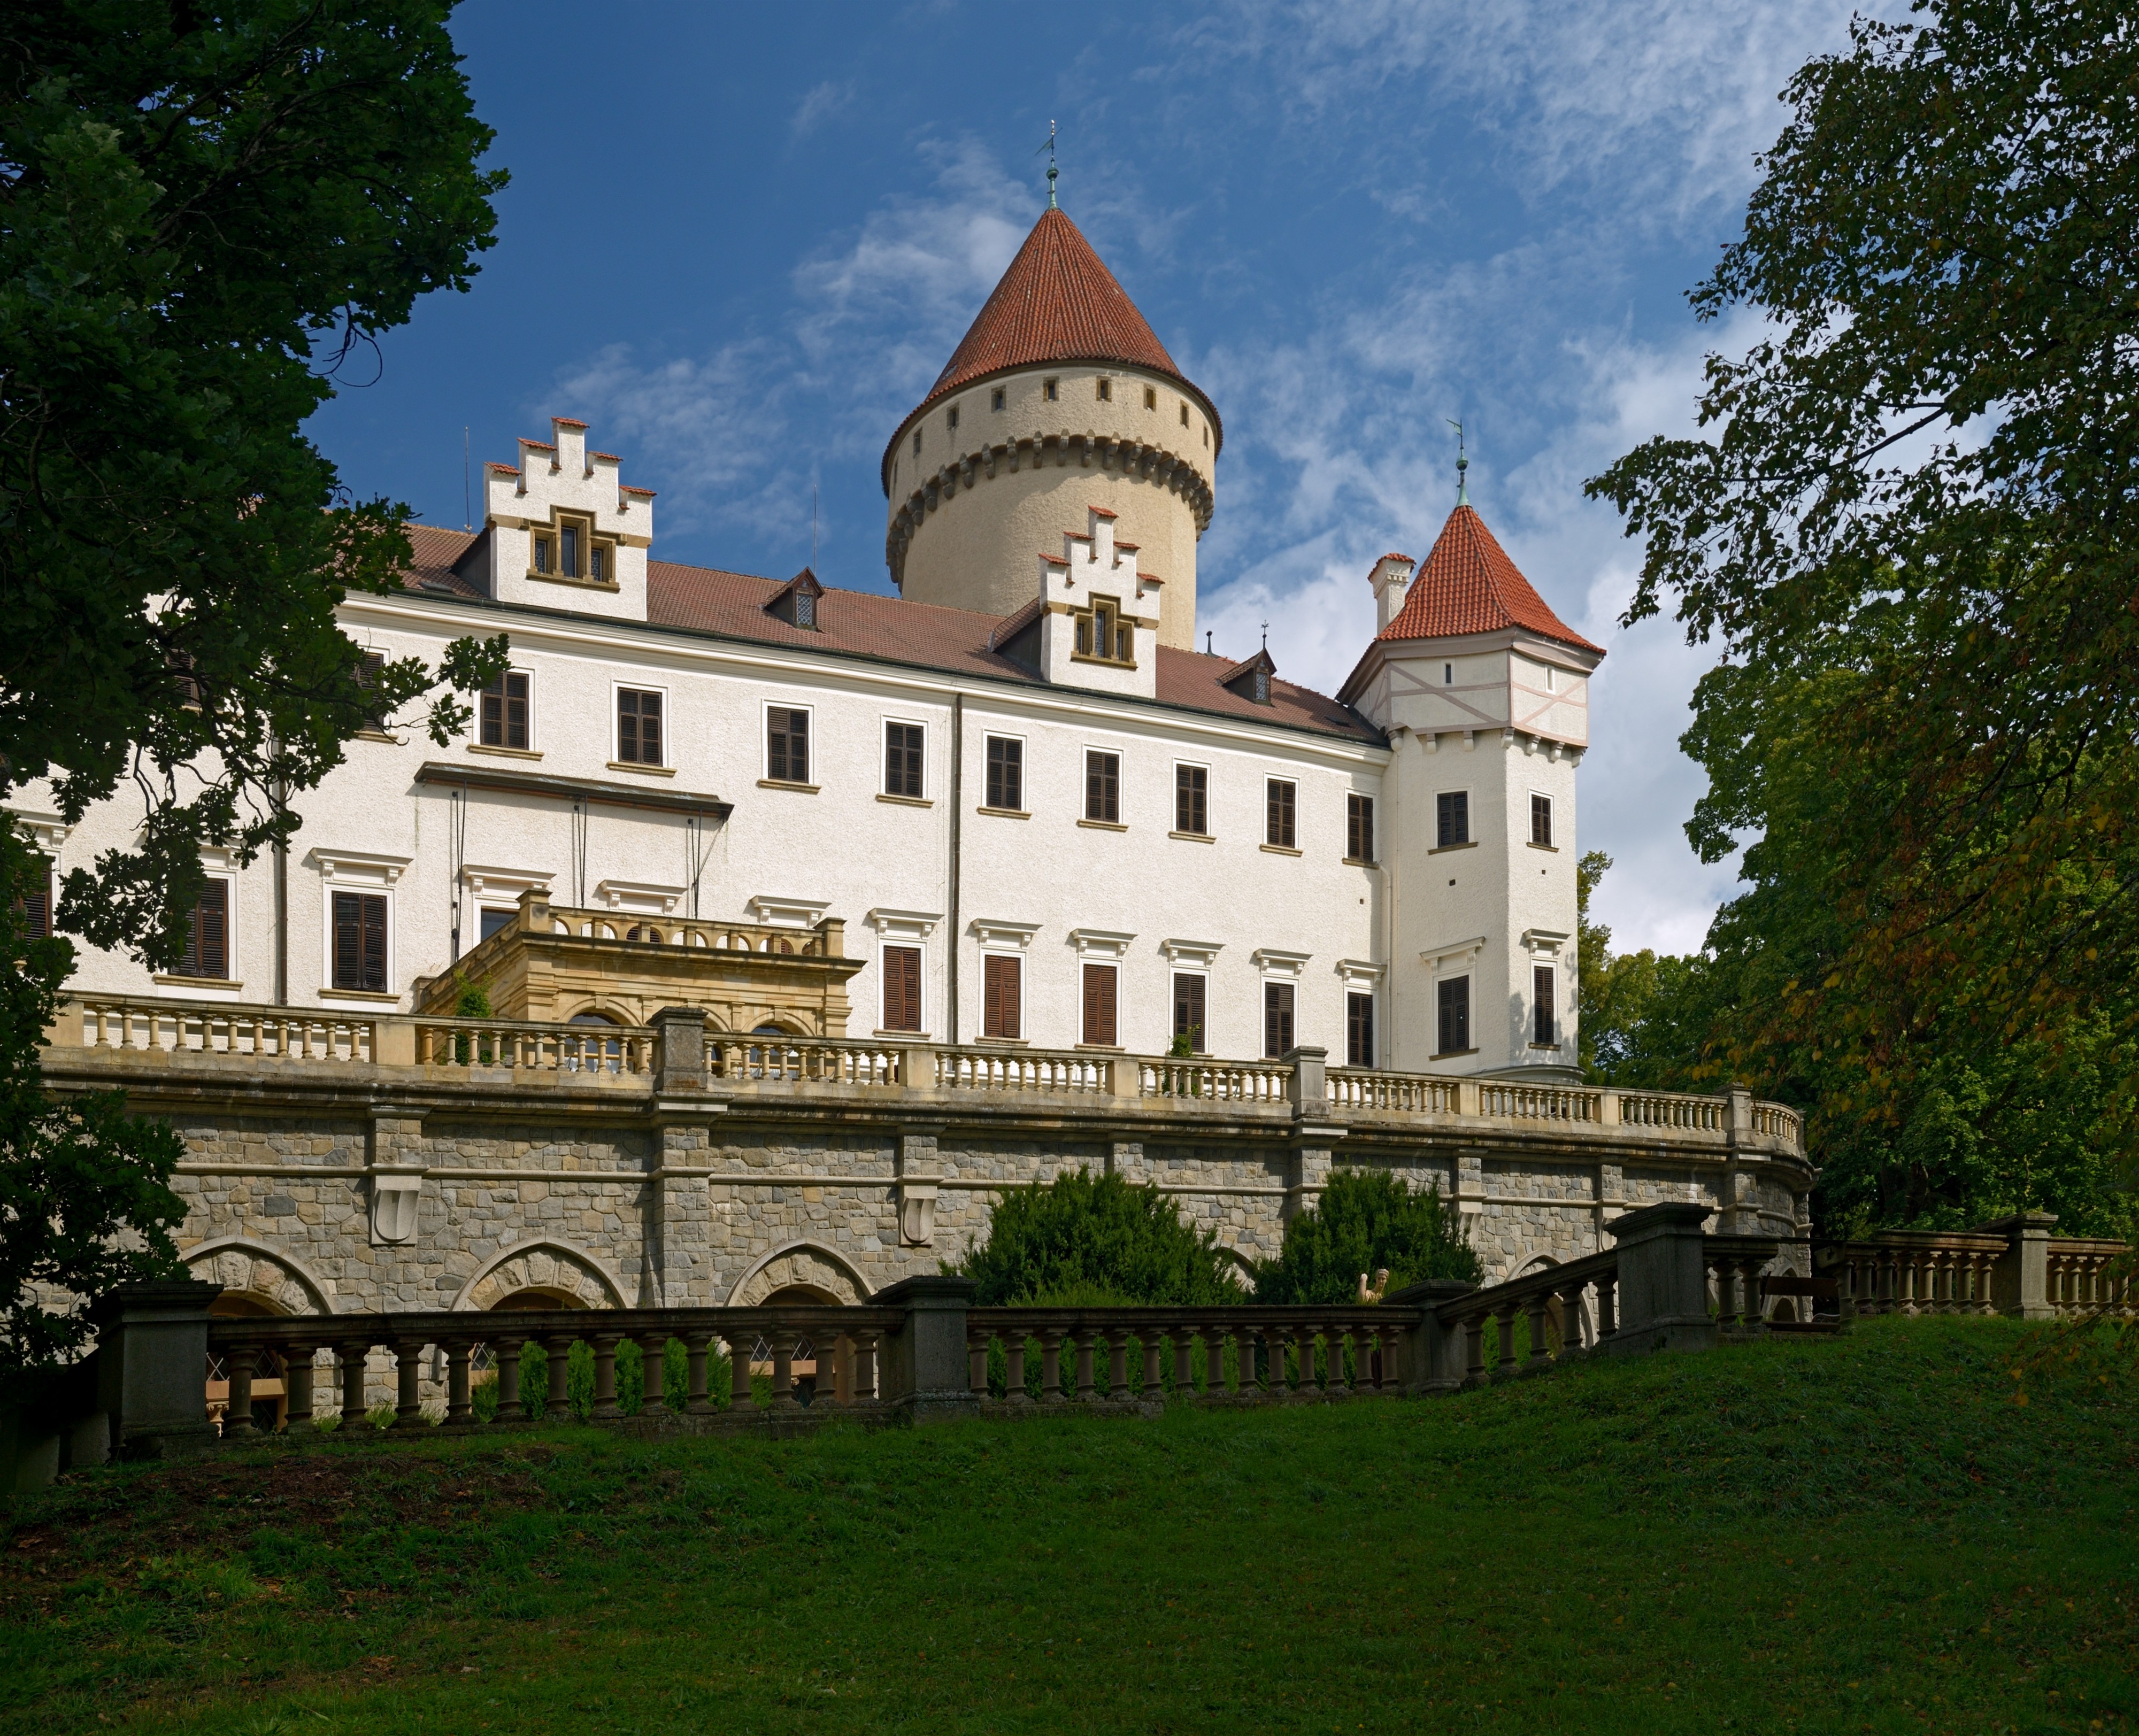 Konopiště château near Benešov, Czech Republic